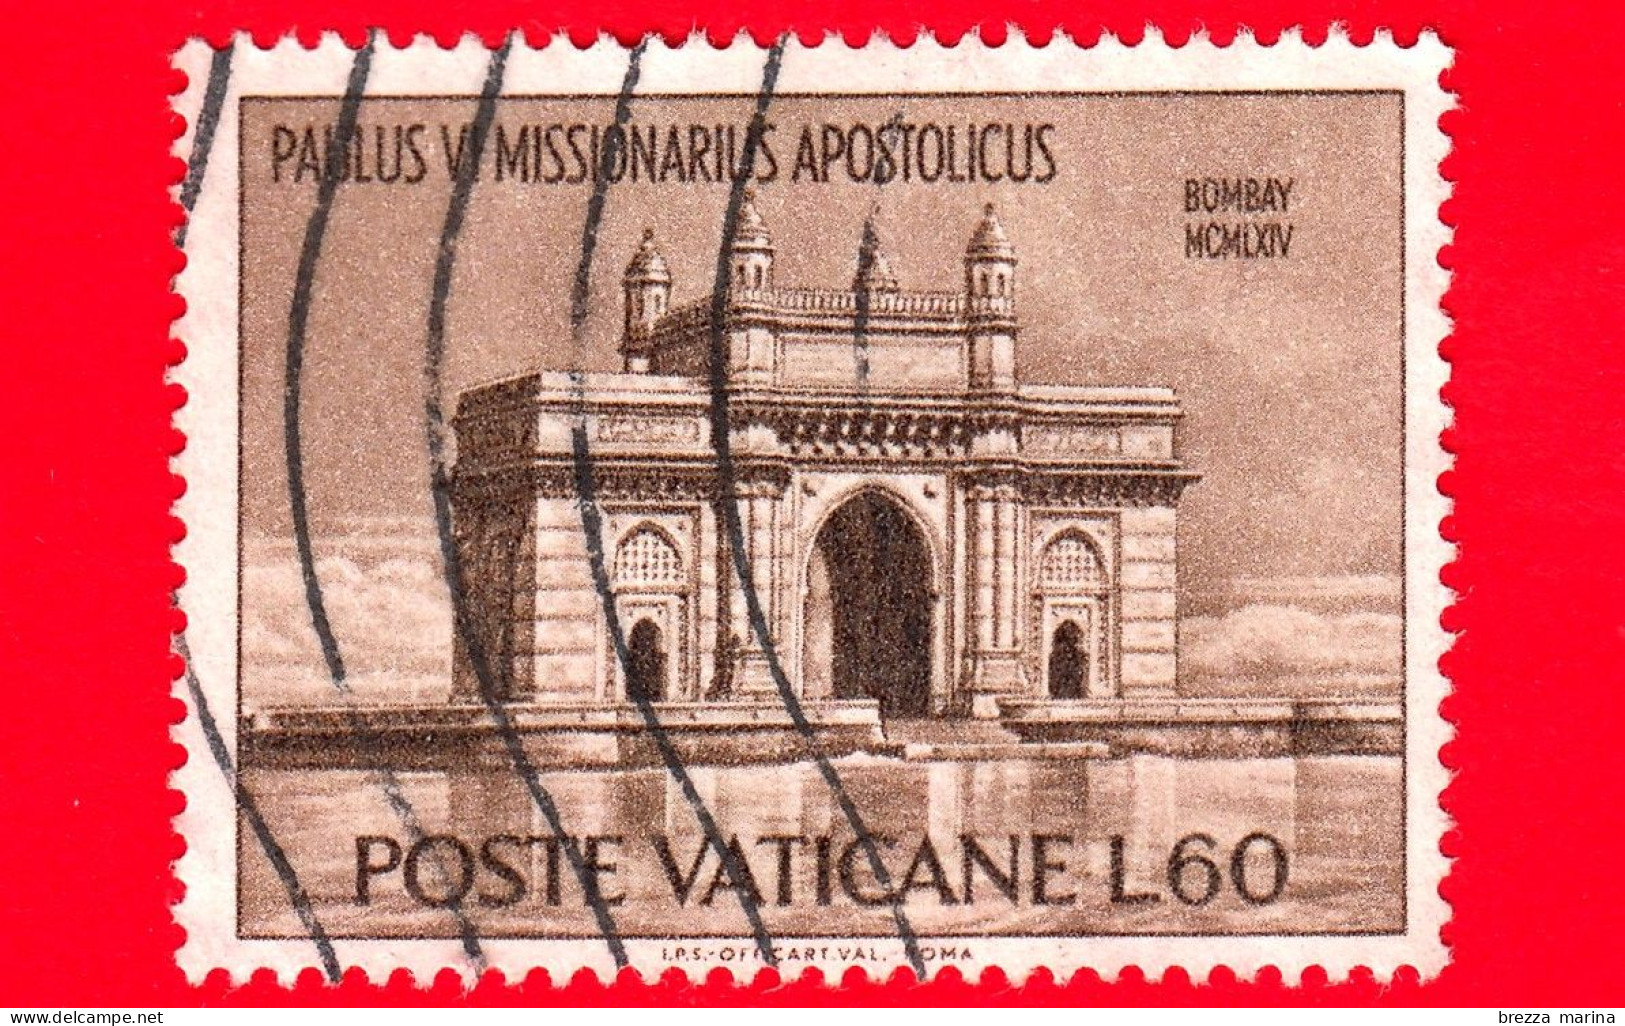 VATICANO  - Usato - 1964 - Viaggi Di Paolo VI In India - Porta Dell'India - Bombay - 60 - Gebruikt